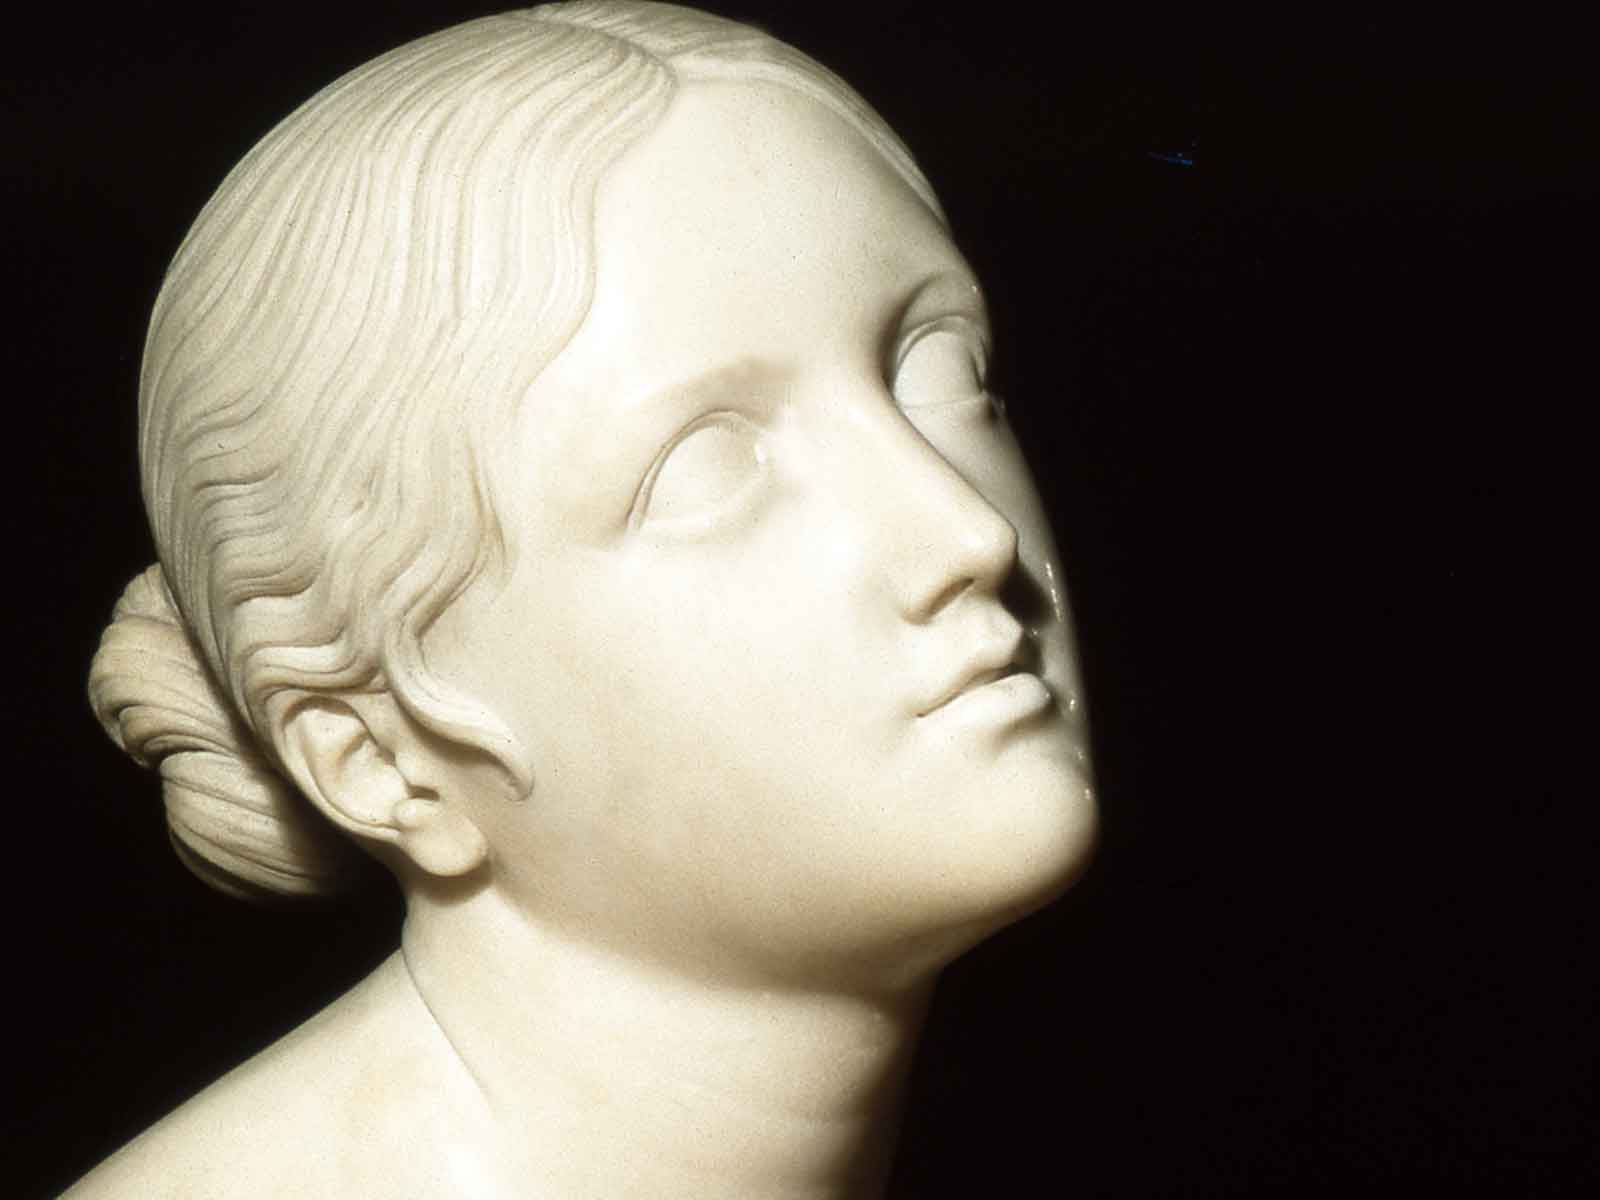 Dettaglio della scultura Fiducia in Dio di Lorenzo Bartolini ritrae una figura femminile con un'espressione serena e lo sguardo rivolto verso l'alto.